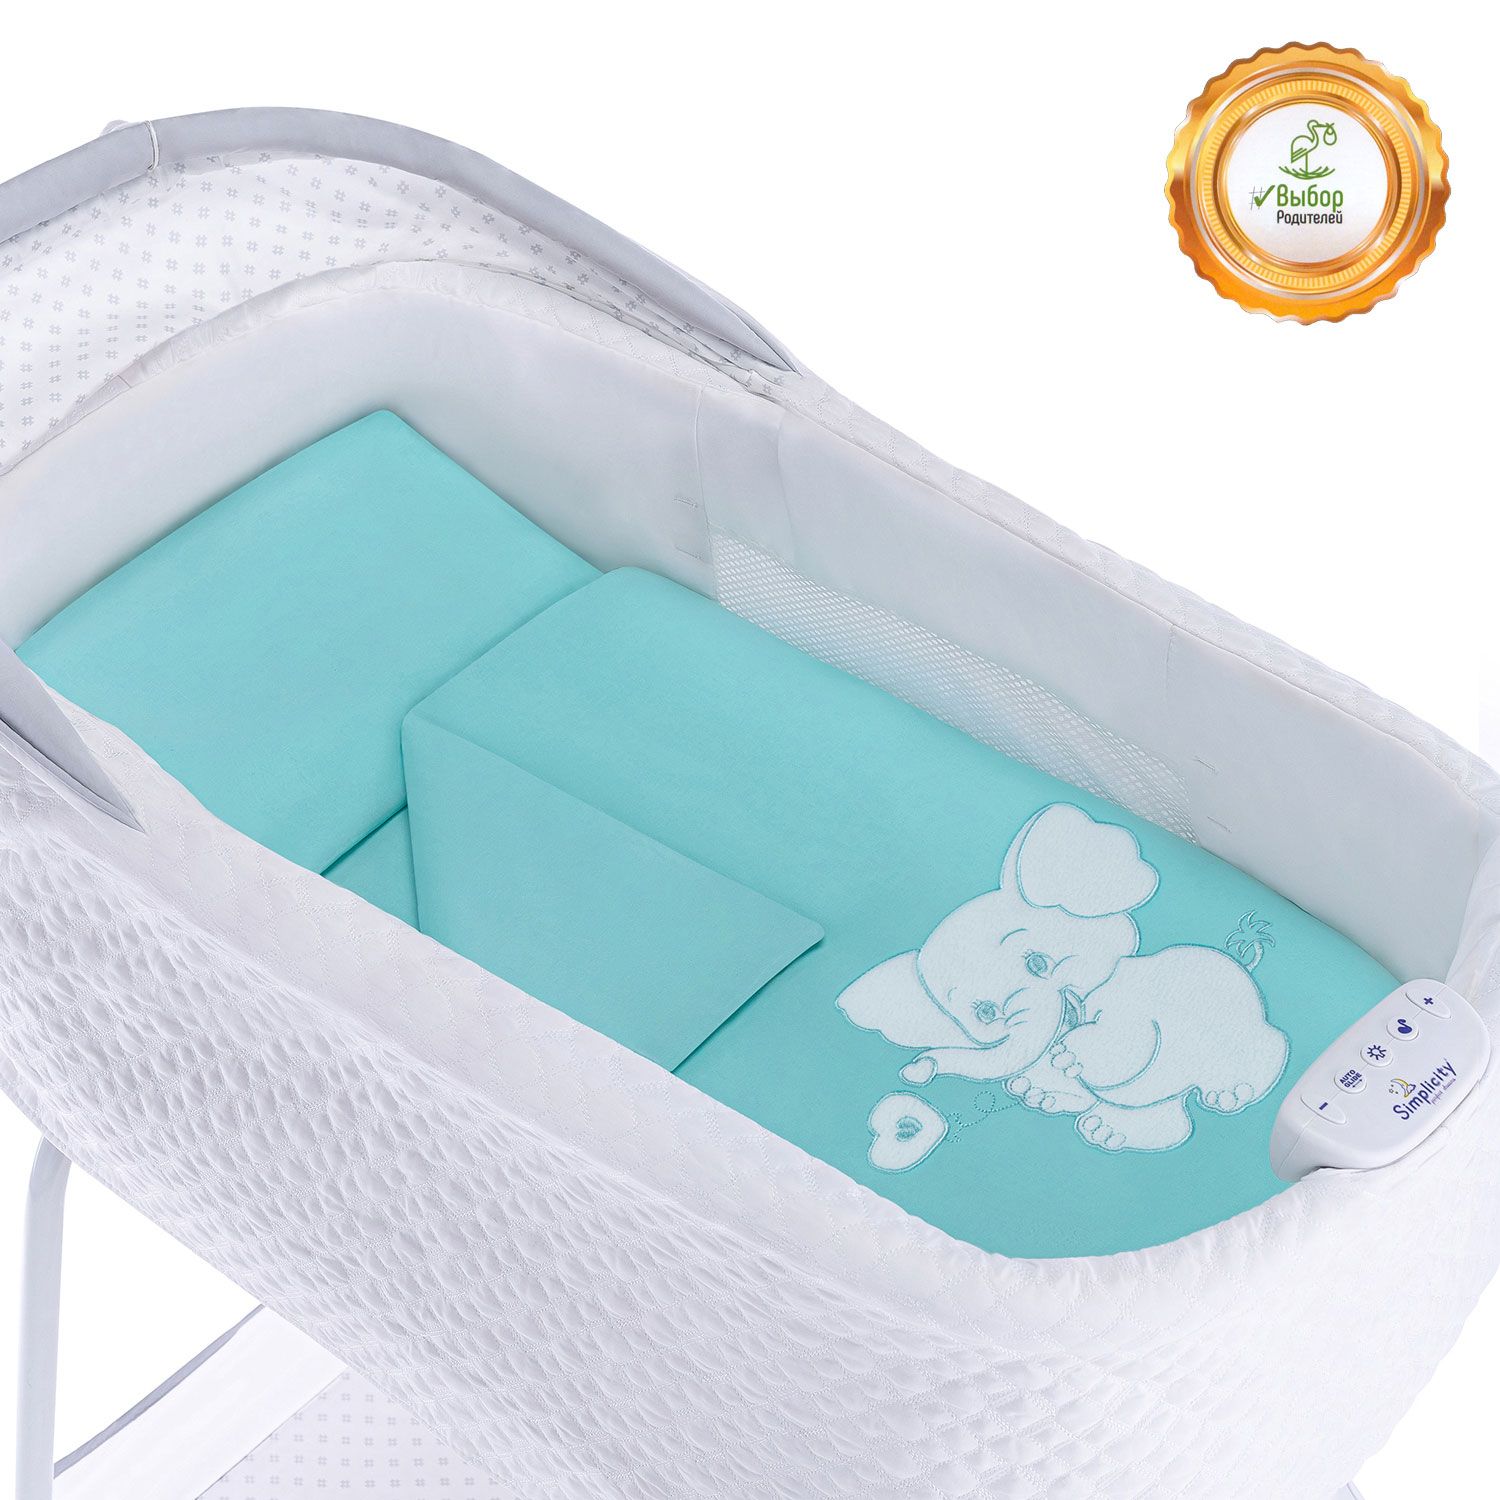 Выбираем размеры детского постельного белья: простыни, пододеяльники и комплекты 160х80 для новорожденных и кроватки